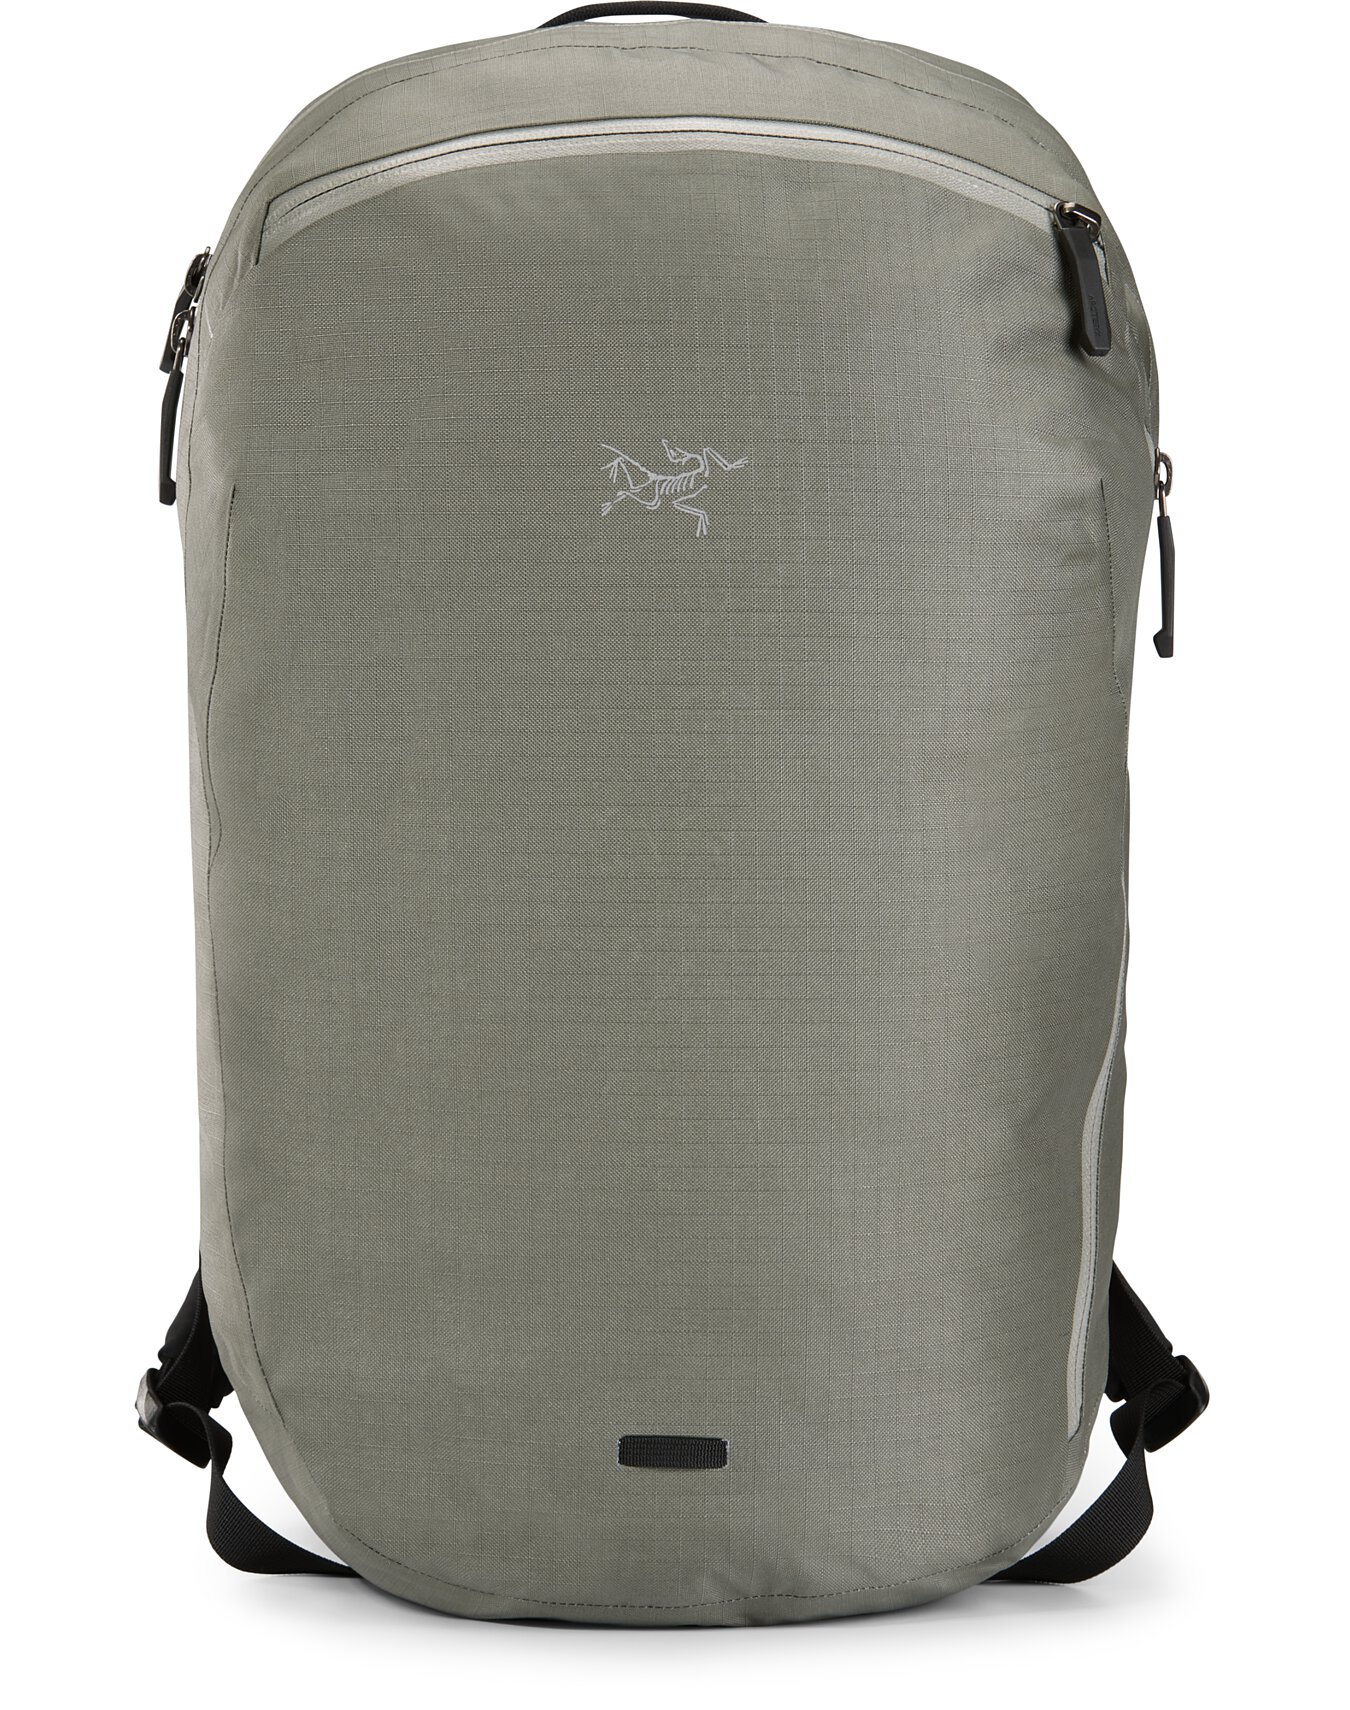 Used Granville 16 Zip Backpack | Arc'teryx ReGEAR